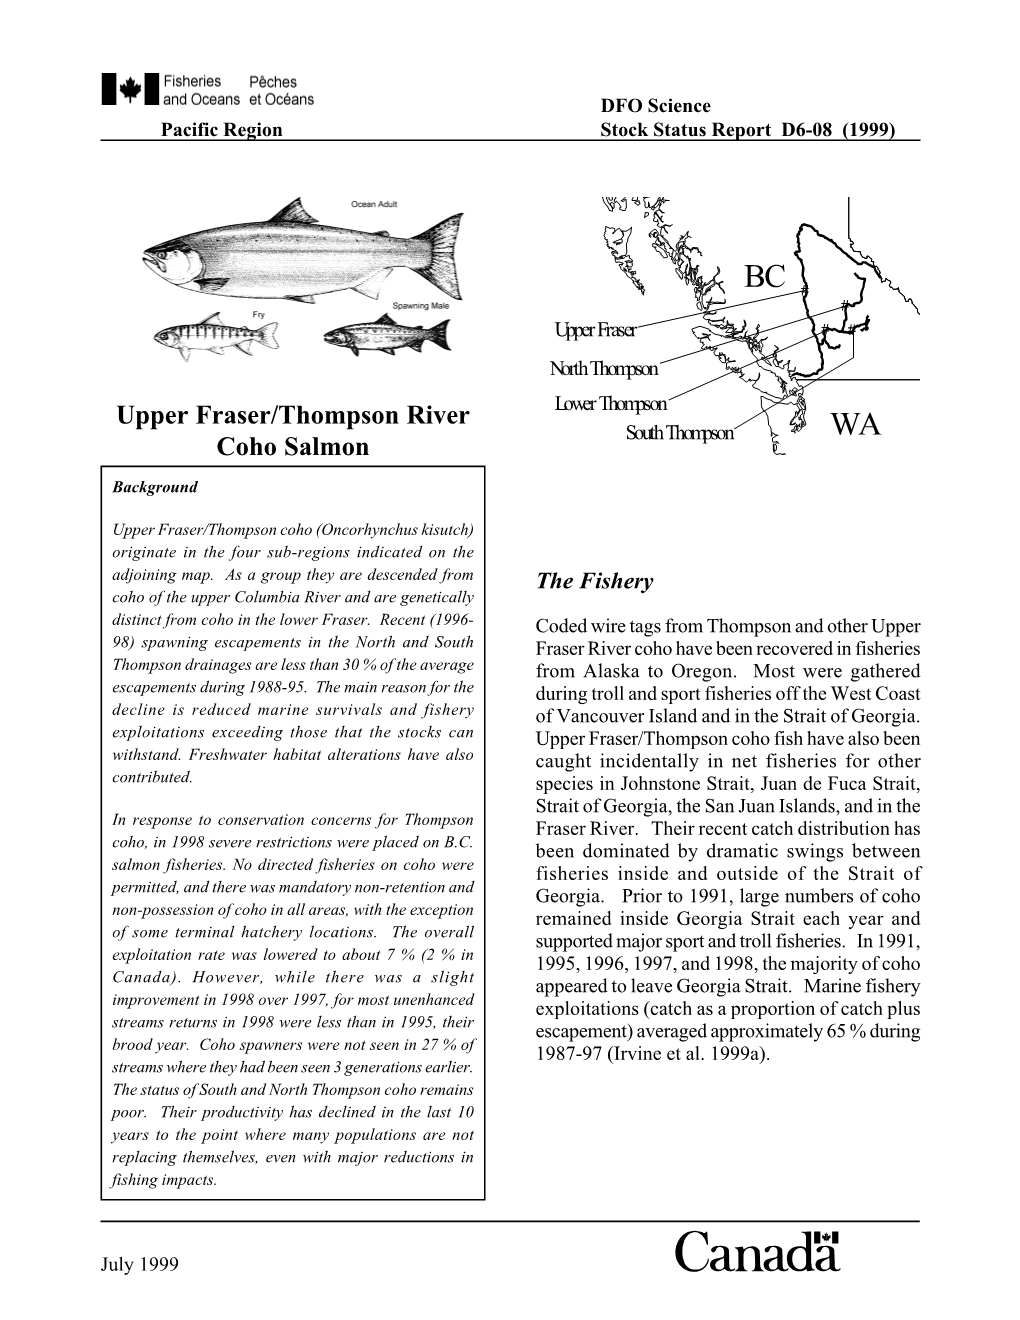 Upper Fraser/Thompson River Coho Salmon